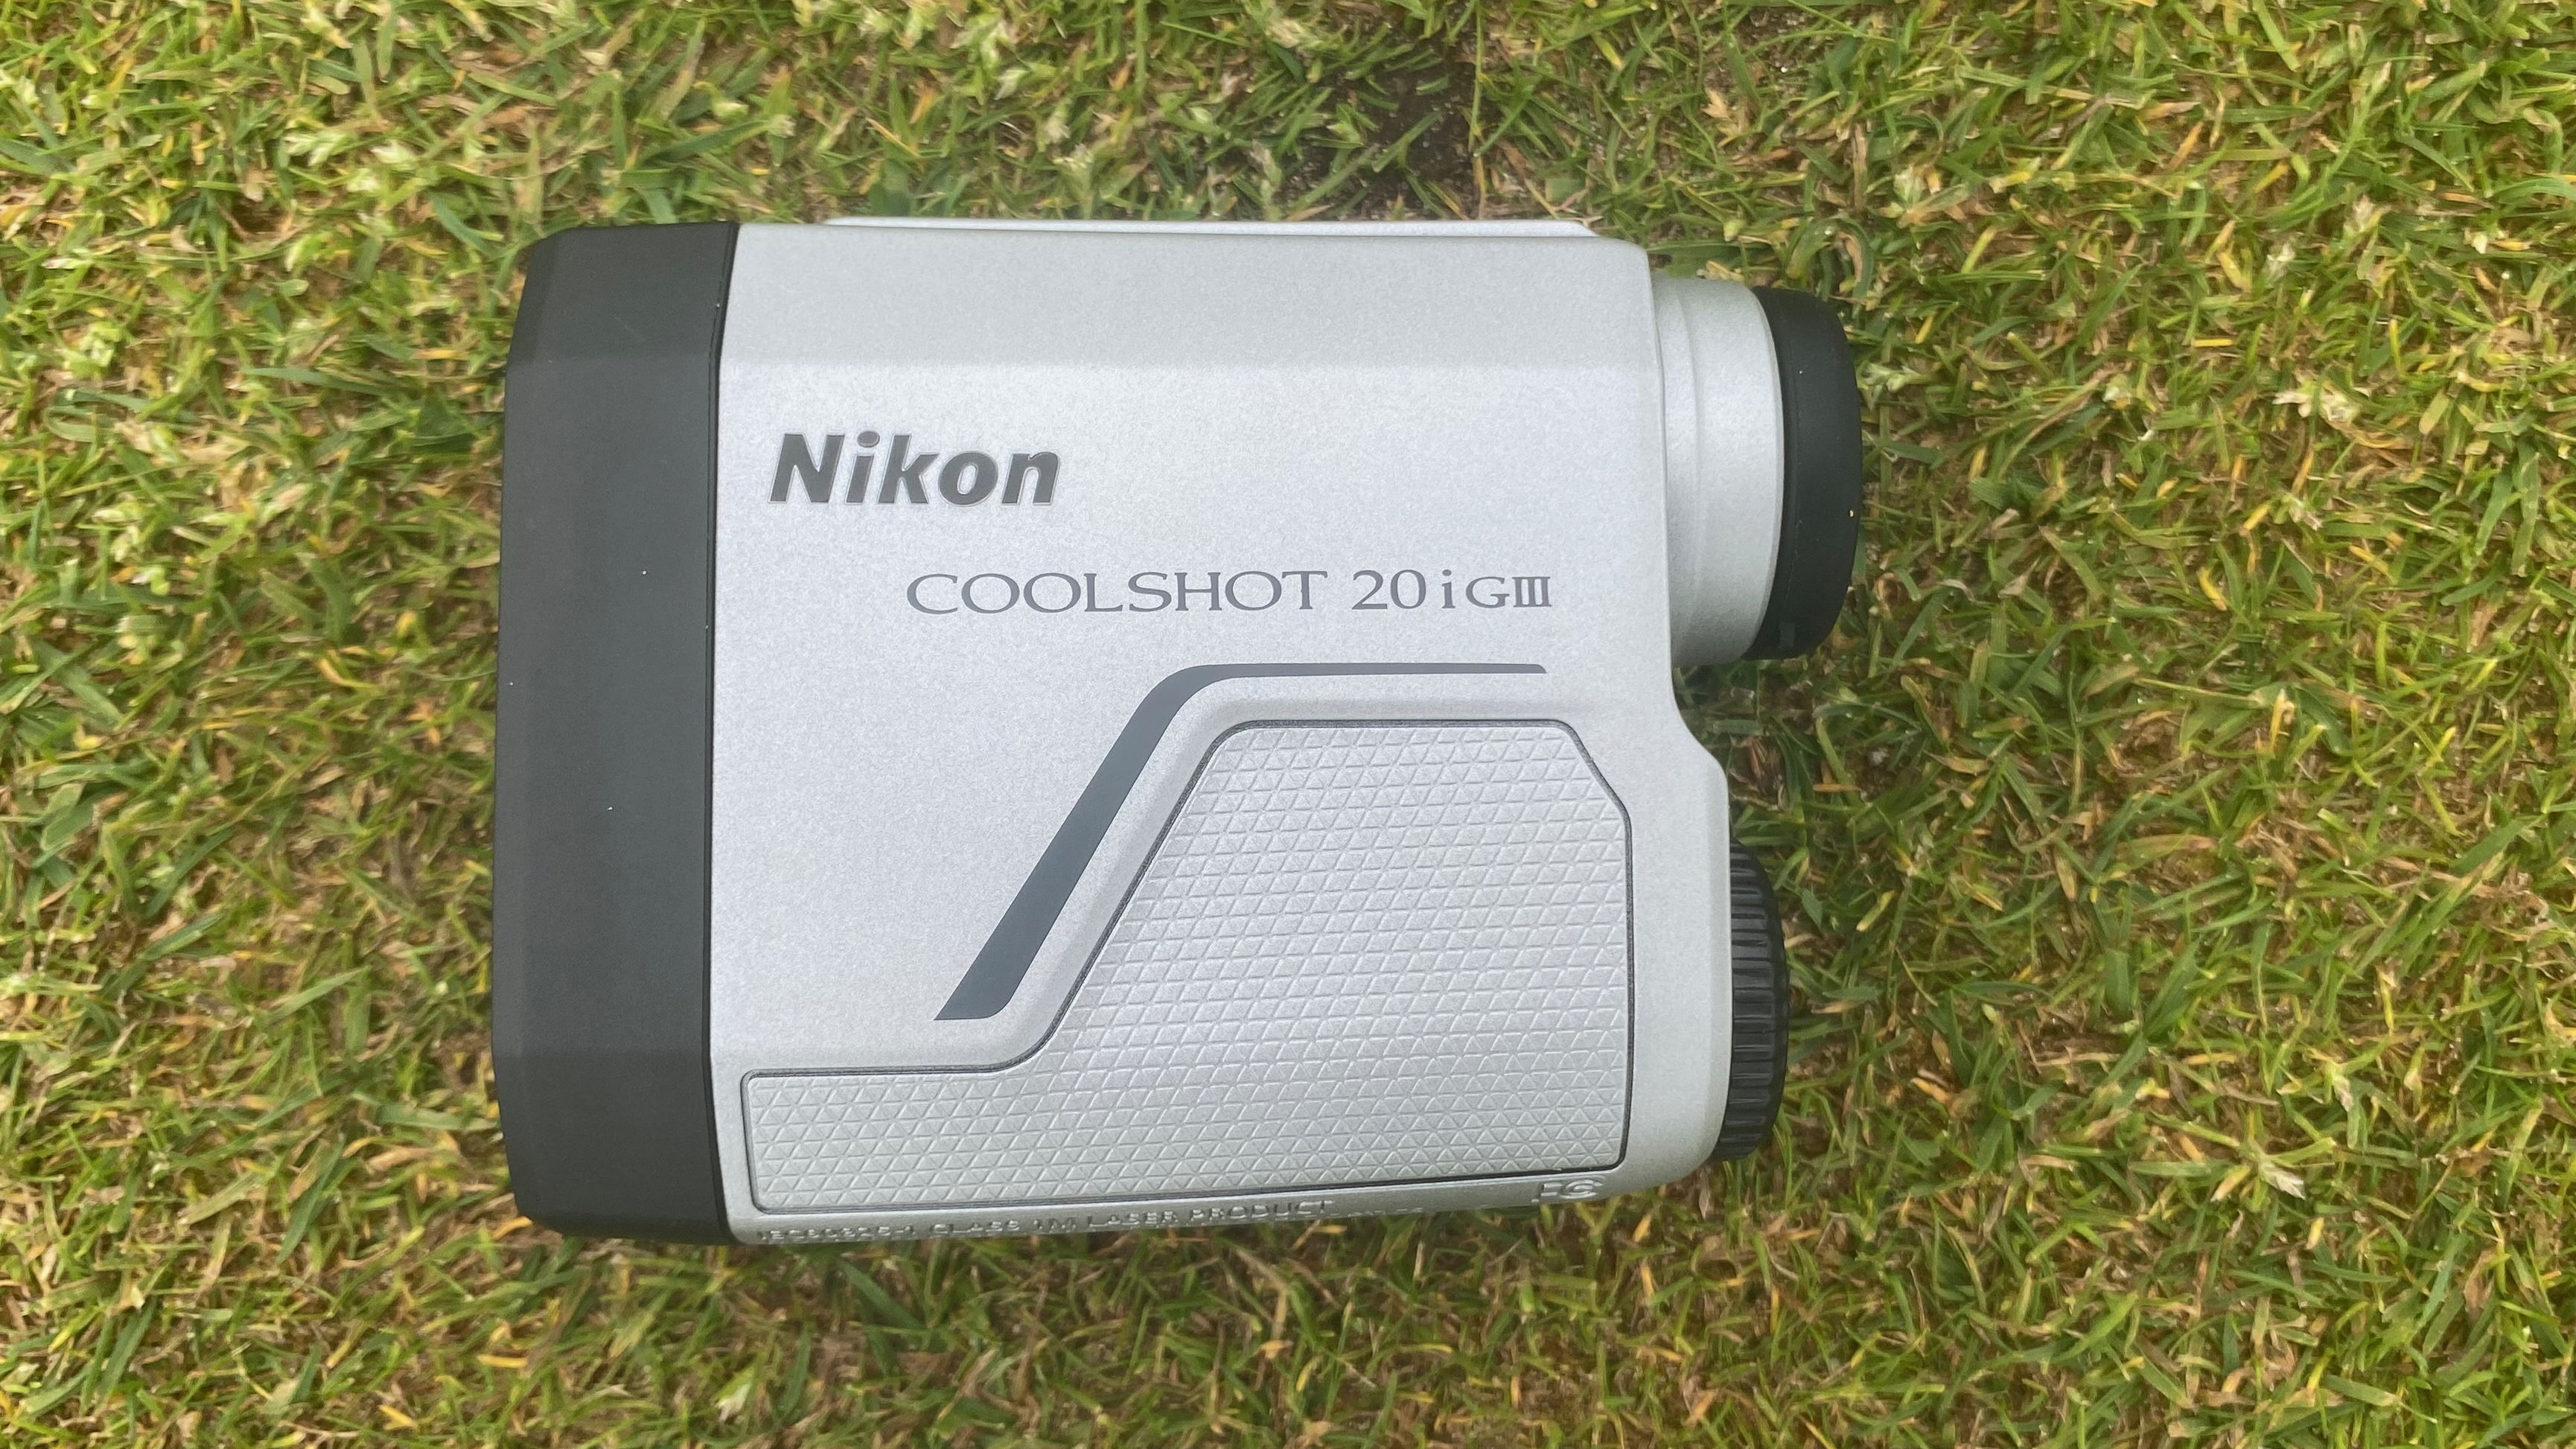 Photo of the Nikon Coolshot 20i GIII Rangefinder